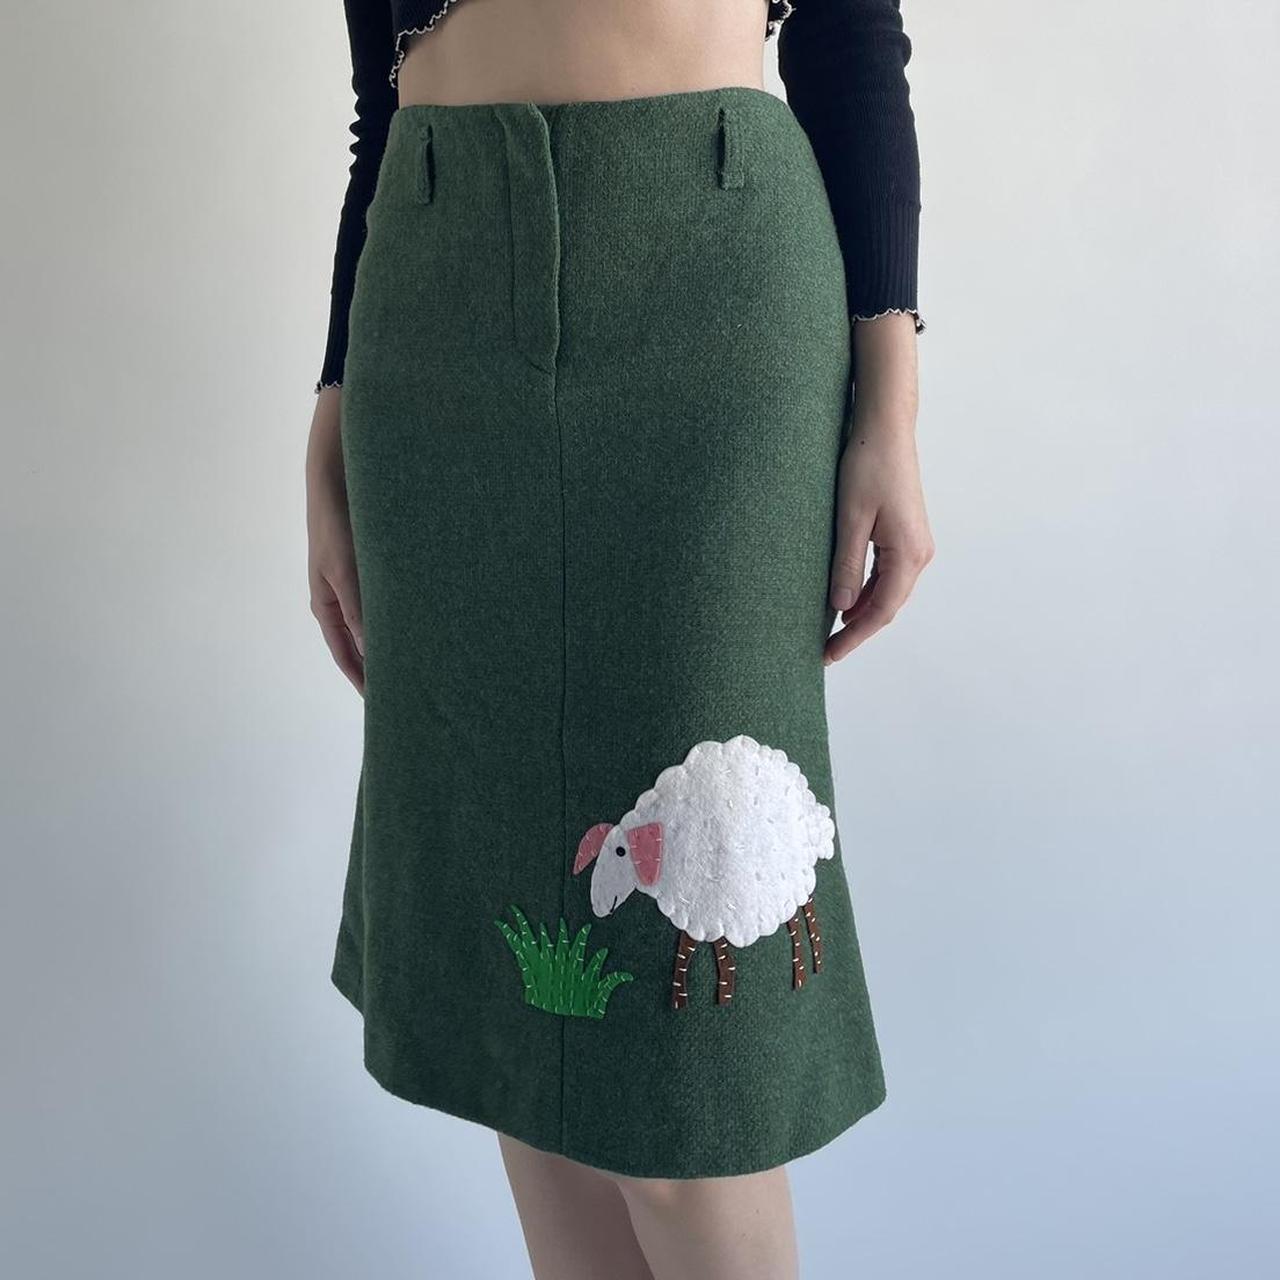 Moschino Cheap & Chic Women's Skirt